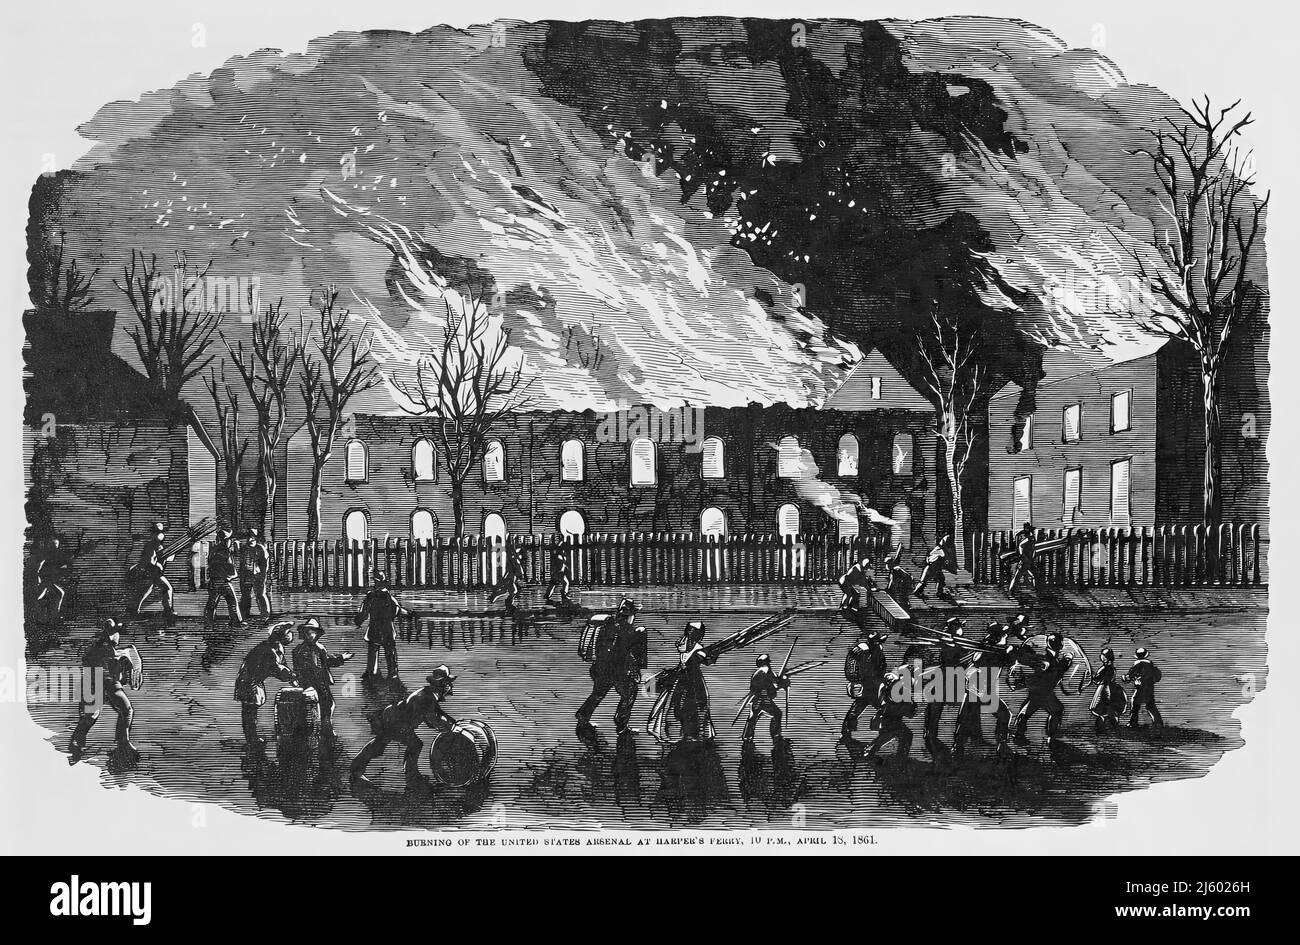 Brûlage de l'Arsenal des États-Unis à Harper's Ferry, 10 H, le 18 avril 1861, pendant la guerre de Sécession américaine. illustration du siècle 19th Banque D'Images